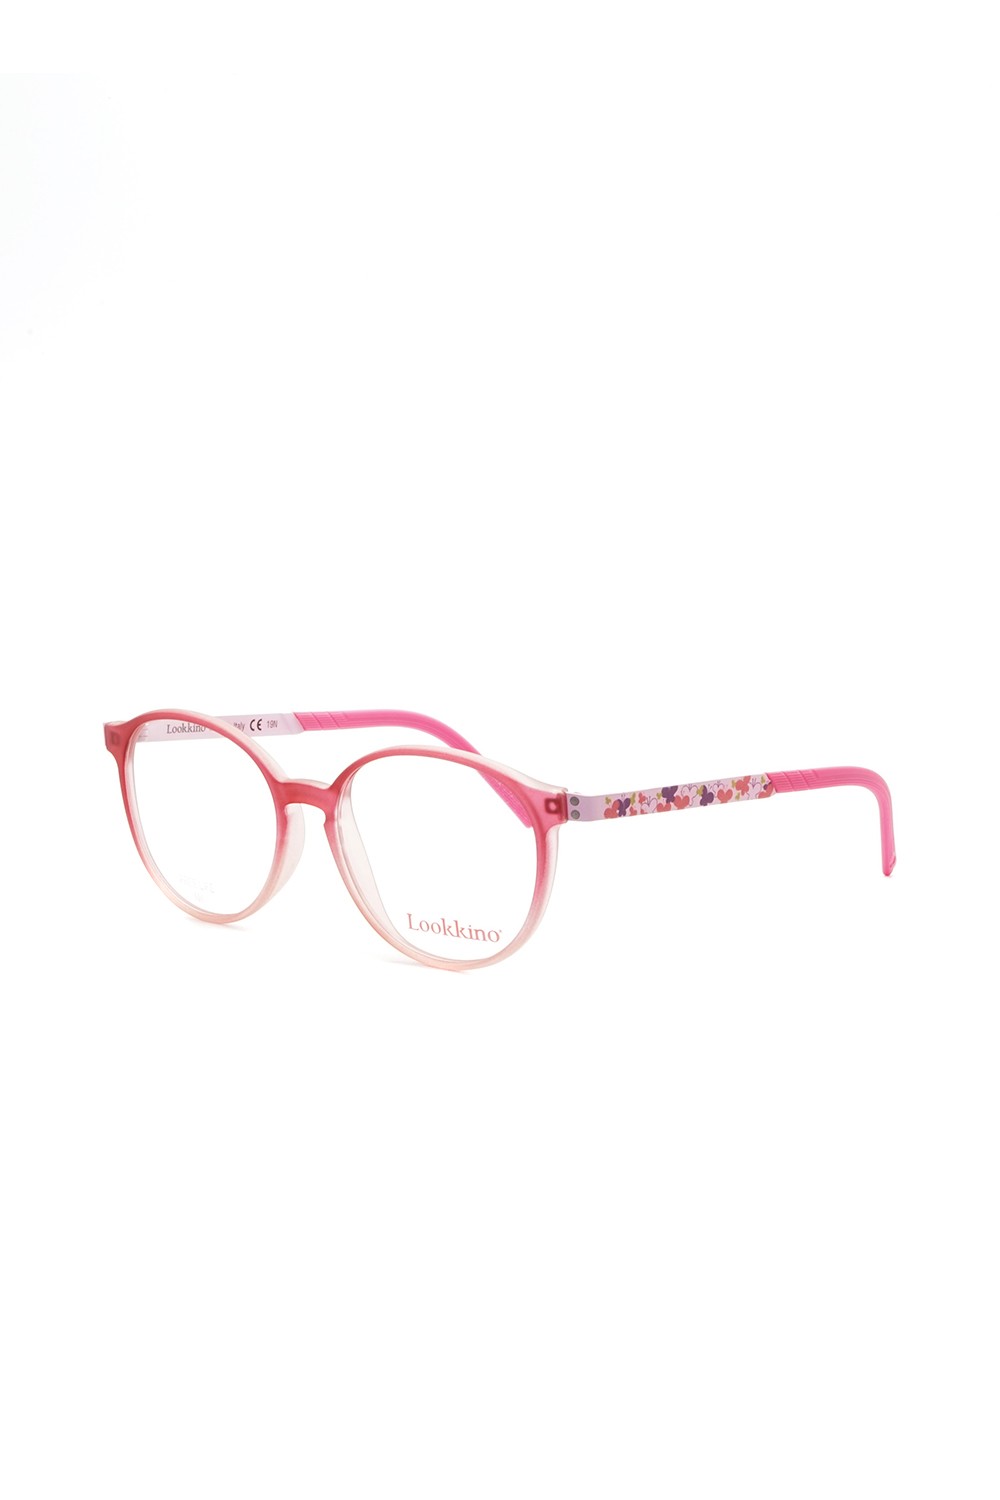 Lookkino - Occhiali da vista in plastica tondi per bambina rosa - 3759 W368